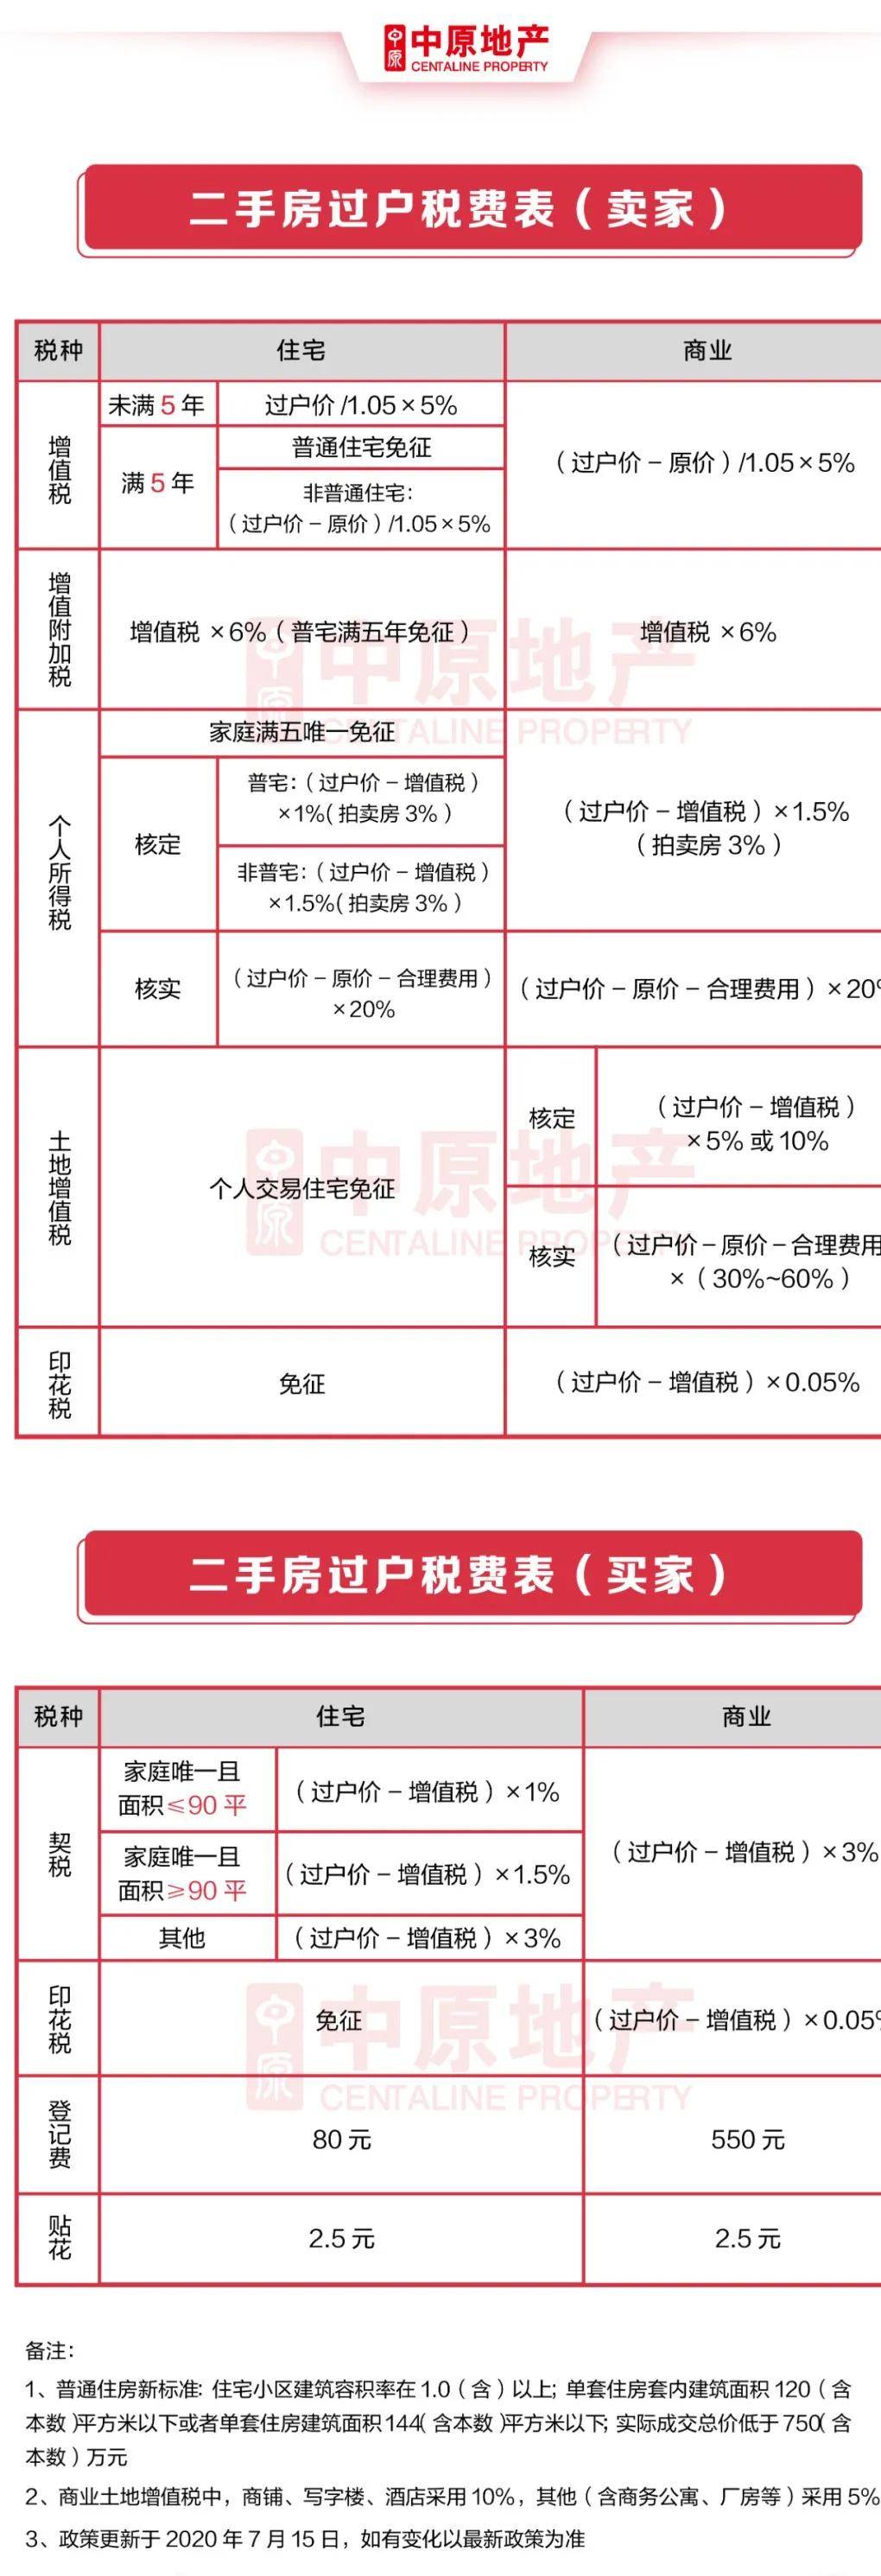 二手房税收新政策_根据2010年1月1日起实行的大小非减持税收新政_上海房地产税收新政